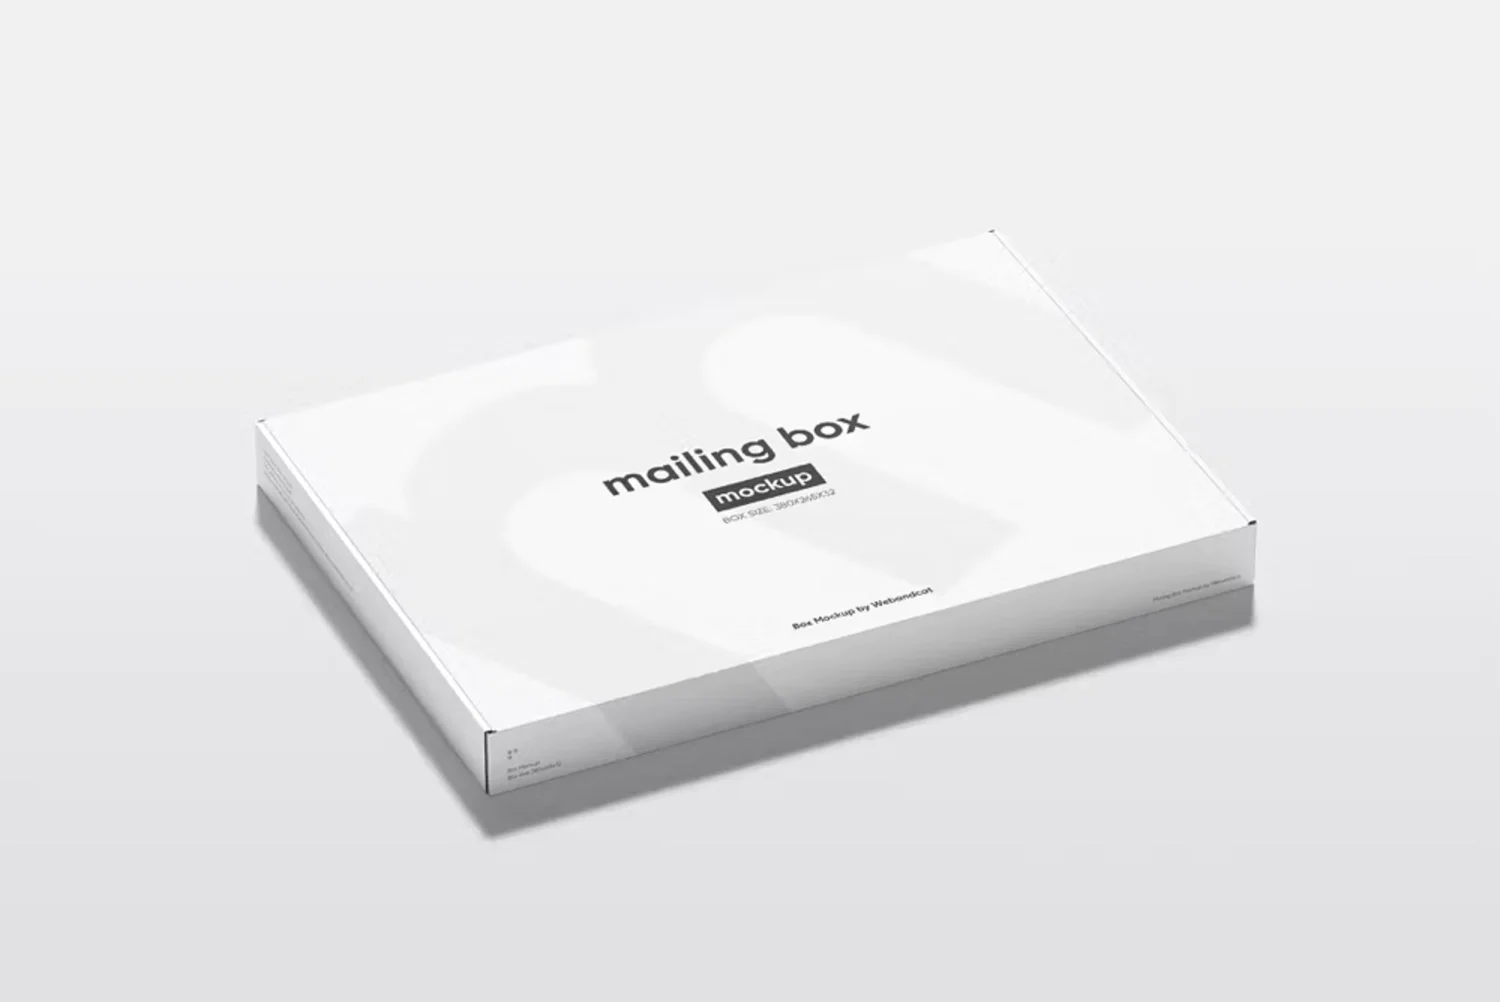 5018 长方形扁平飞机盒礼盒模型盒面设计贴图ps包装样机素材模板 4psd Slim Mailing Box Mockup@GOOODME.COM